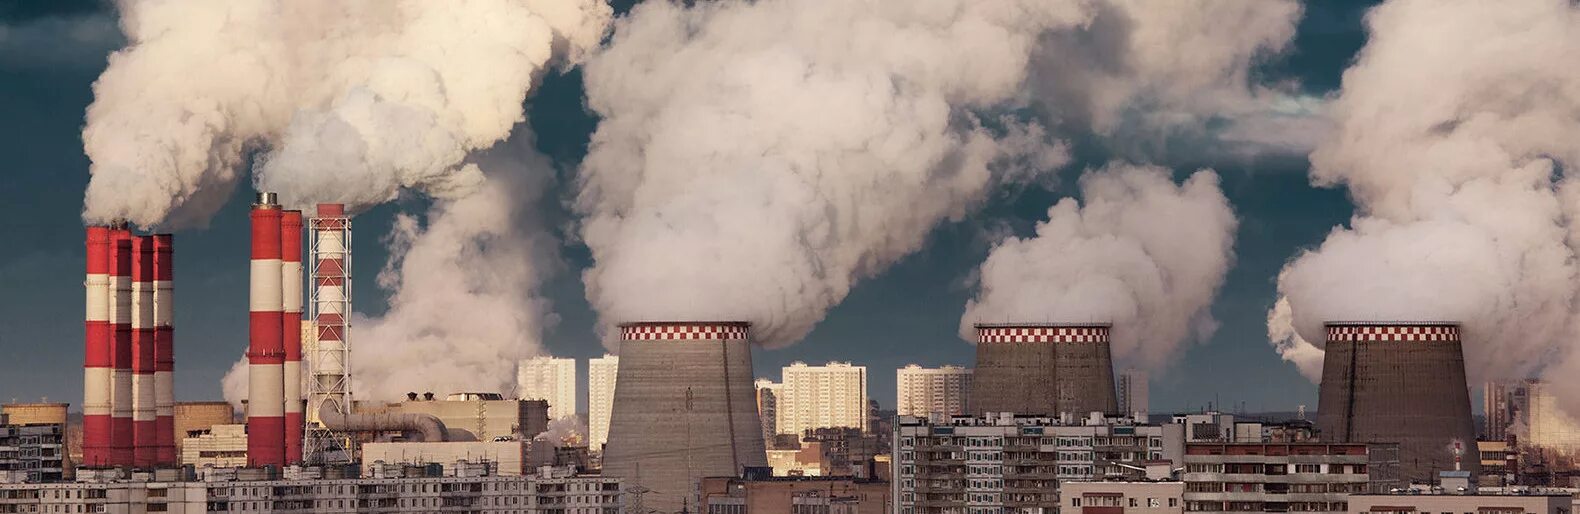 Омск химический завод выбросы. Химические вещества загрязняющие атмосферный воздух. Загрязнение воздуха предприятиями. Выбросы в атмосферу загрязняющих веществ.